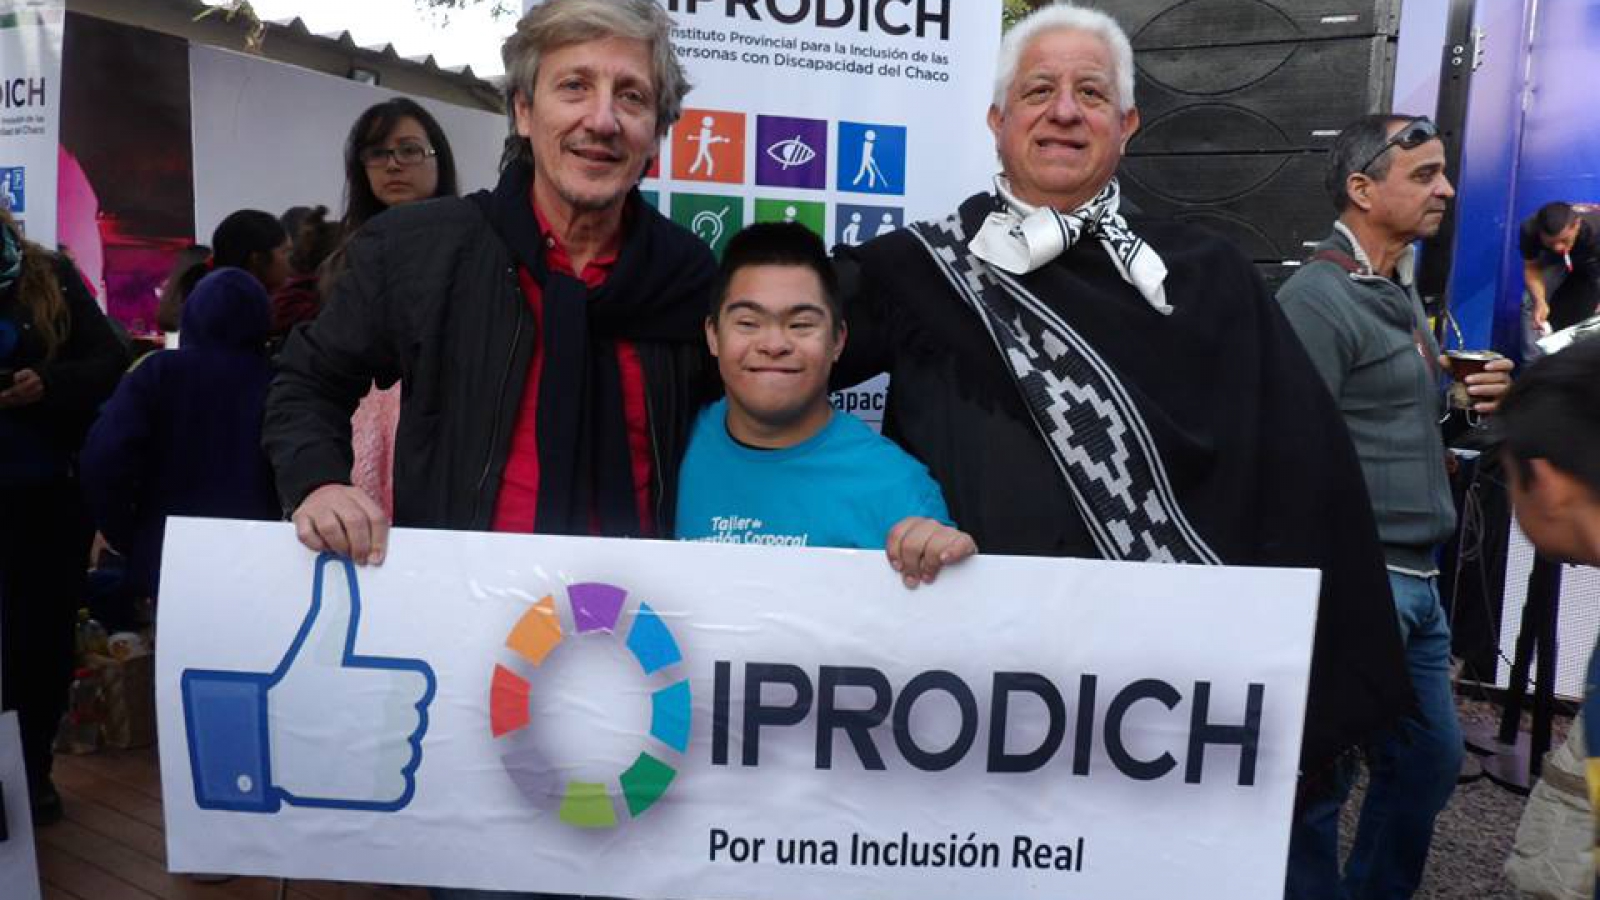 El presidente del IPRODICH junto a persona con discapacidad